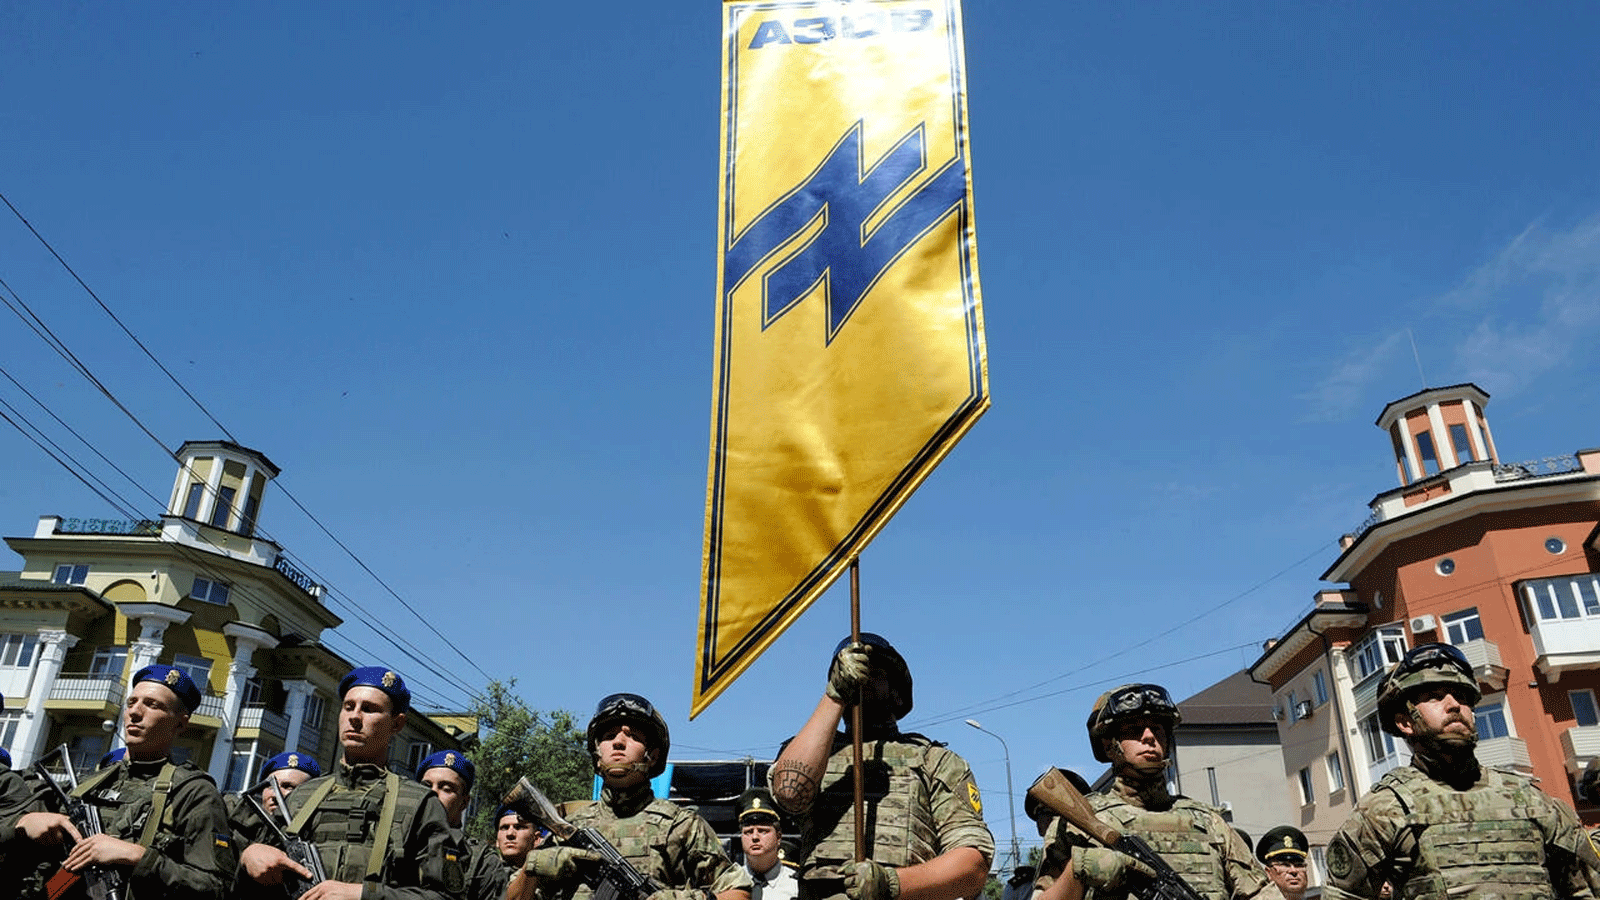  فوج آزوف الأوكراني الذي تم إنشاؤه في عام 2014 من قبل نشطاء اليمين المتطرف